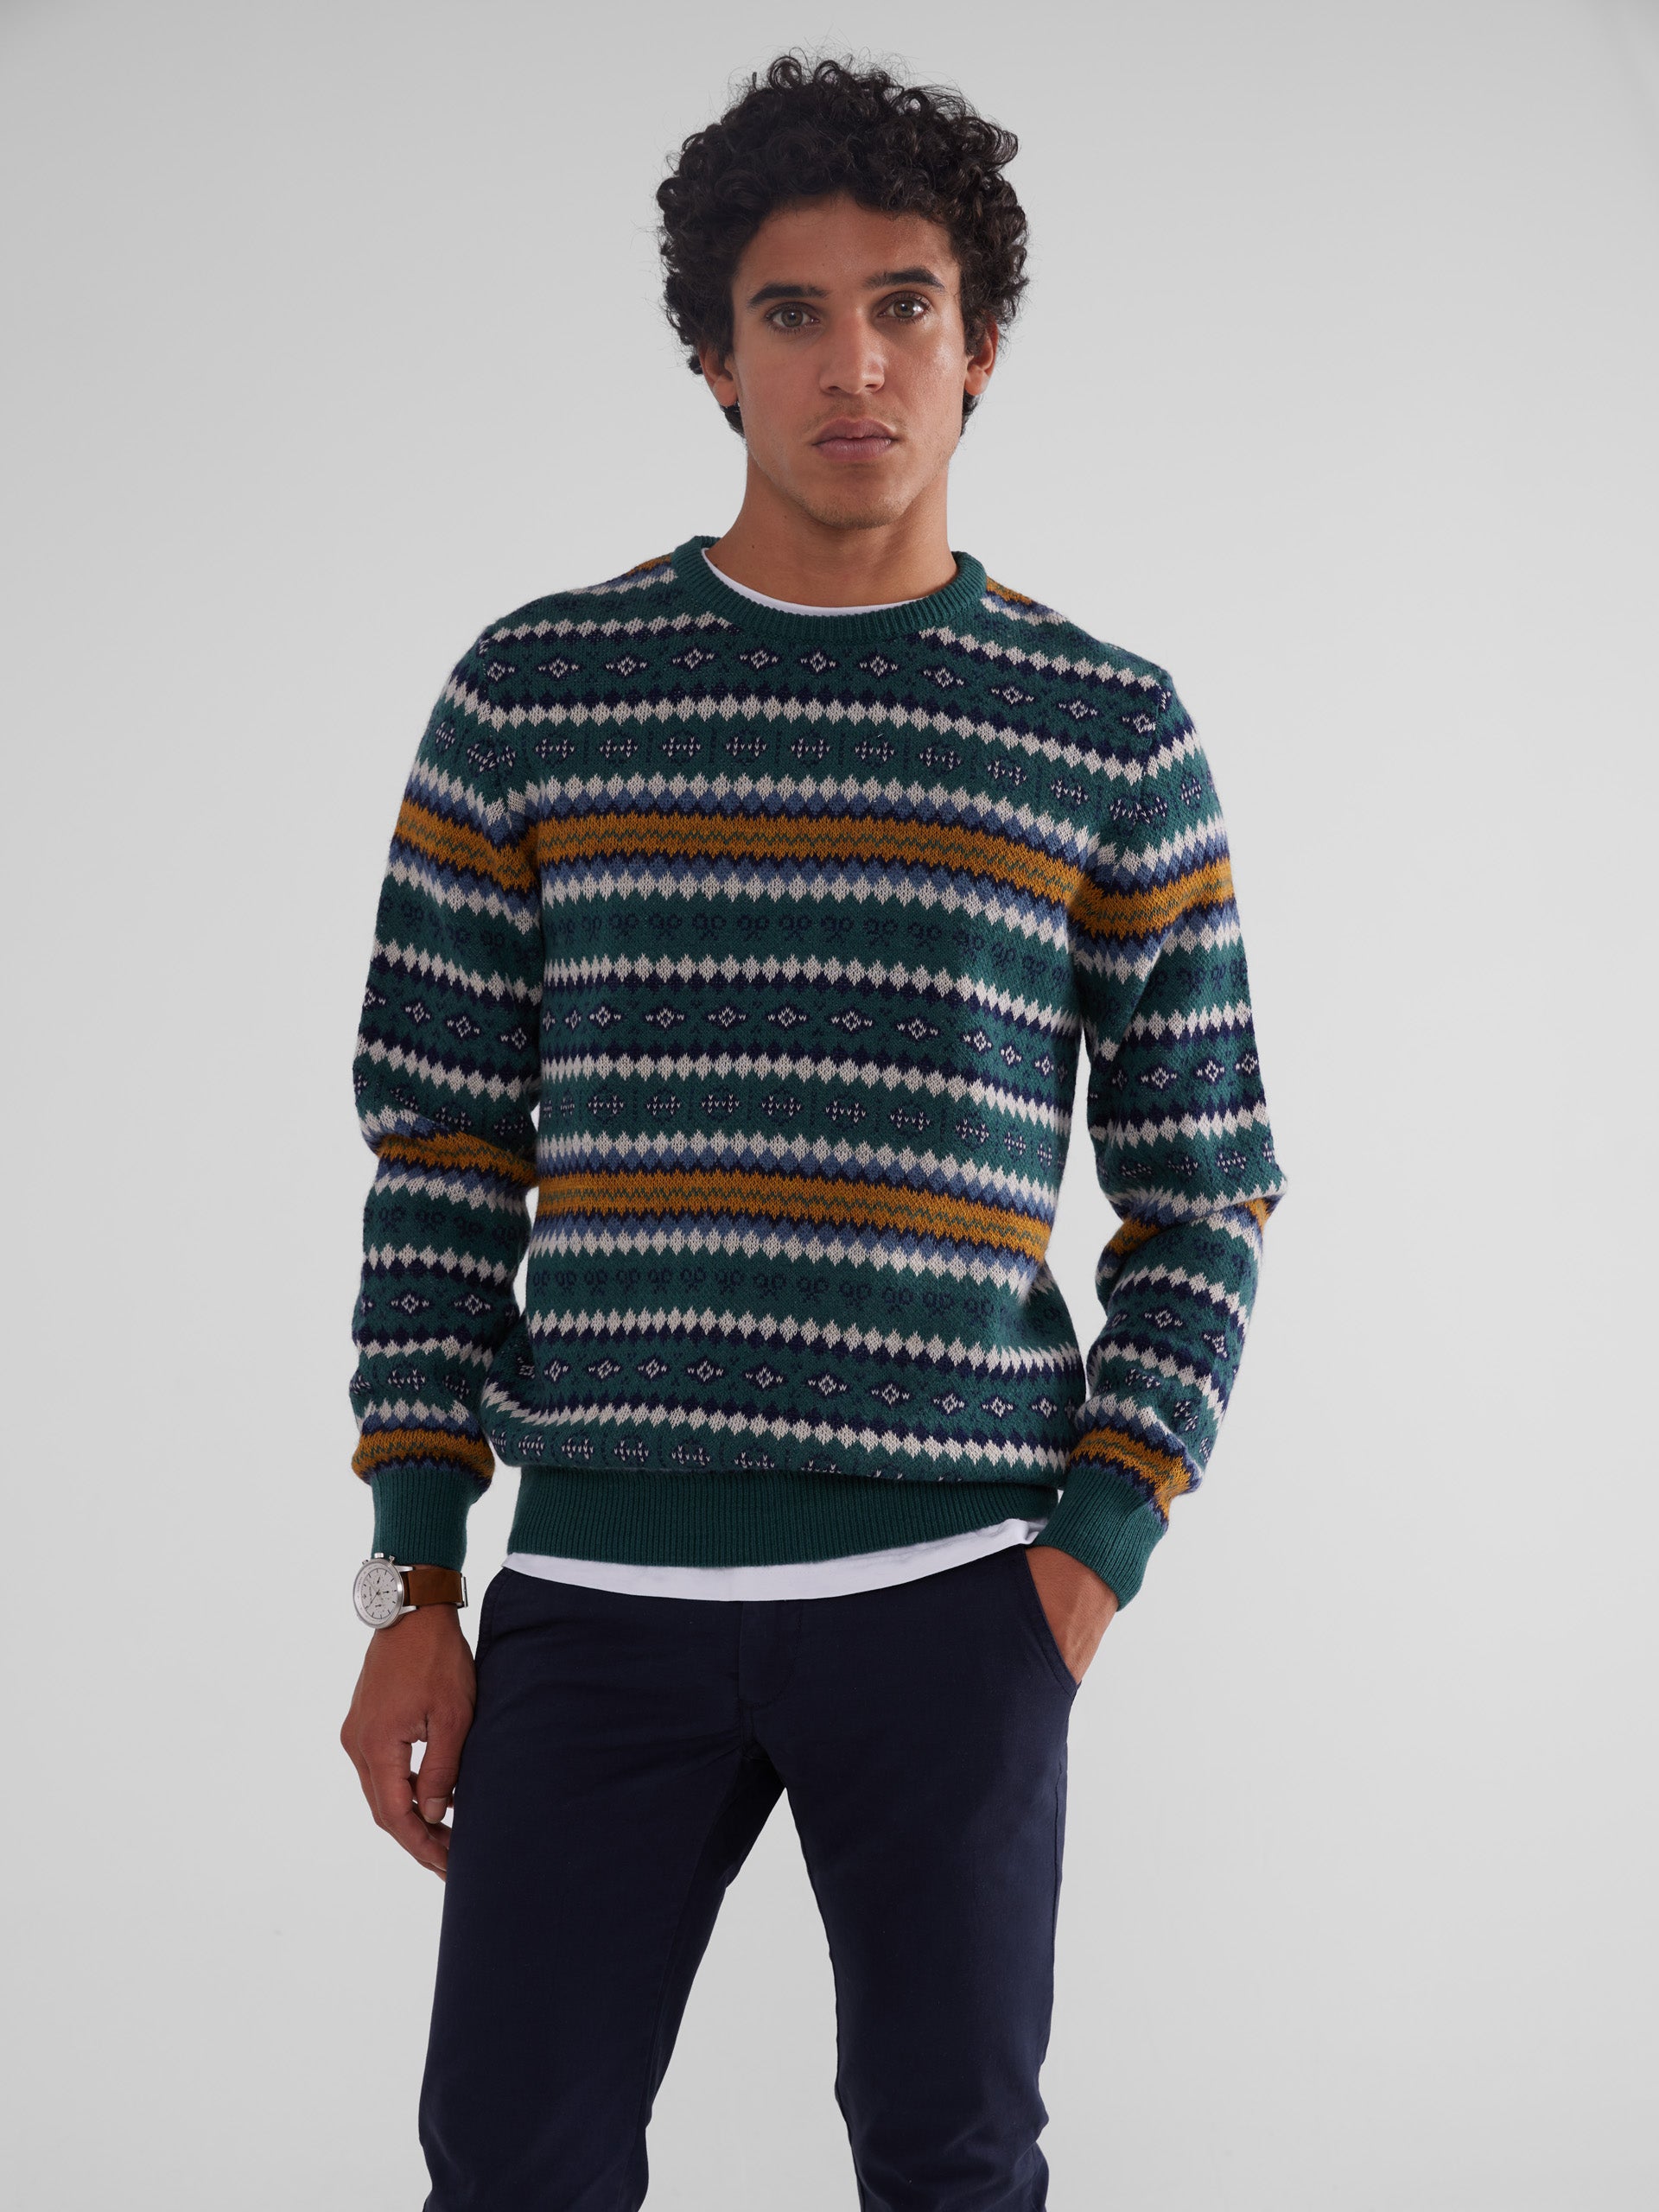 Green multicolored jacquard sweater